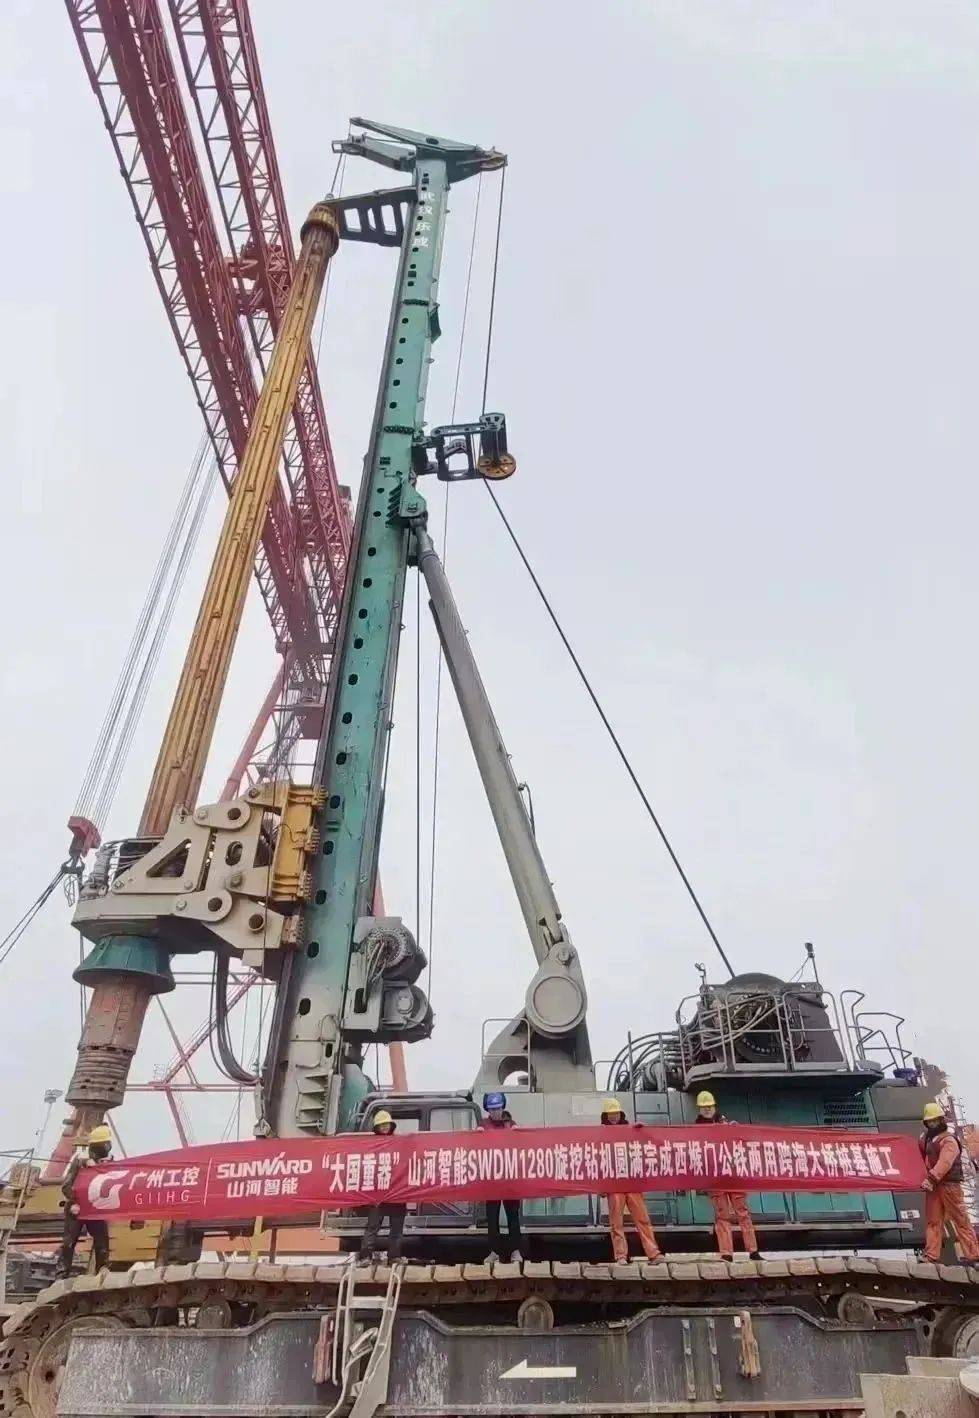 山河智能超级旋挖钻机圆满完成甬舟铁路西堠门公铁两用大桥桩基施工任务 